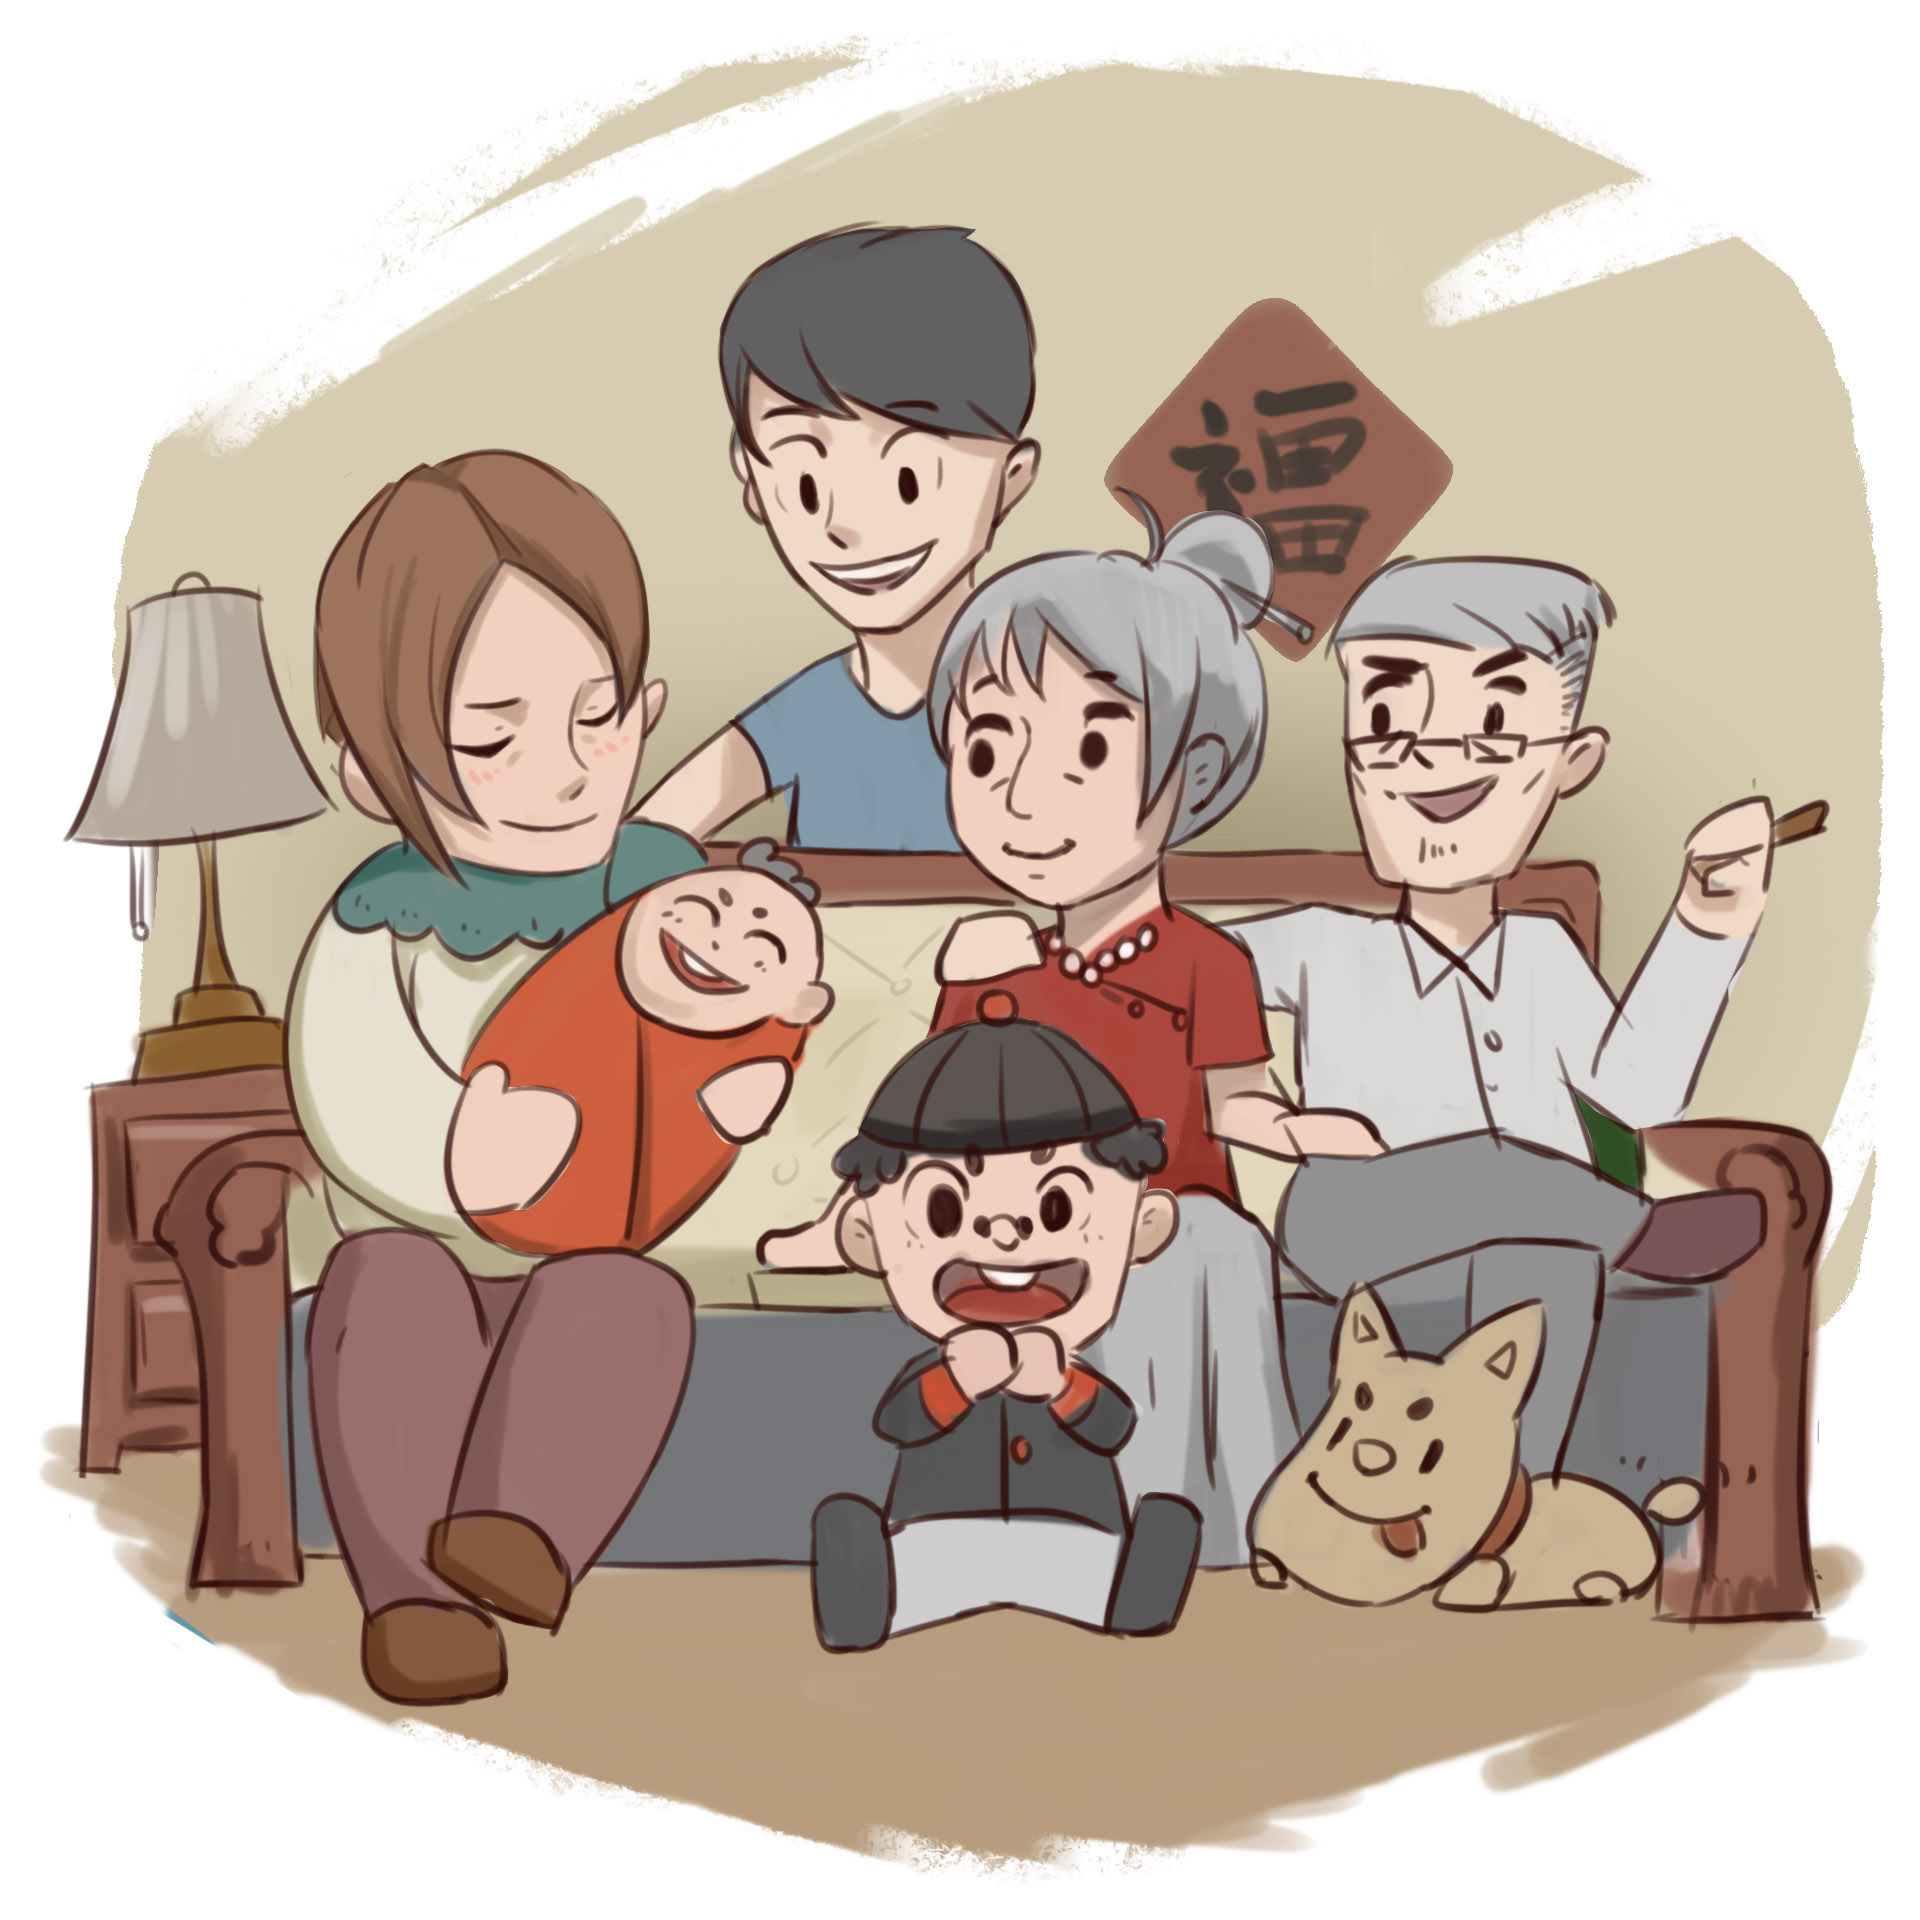 Tranh vẽ về đề tài gia đình hạnh phúc đẹp nhất